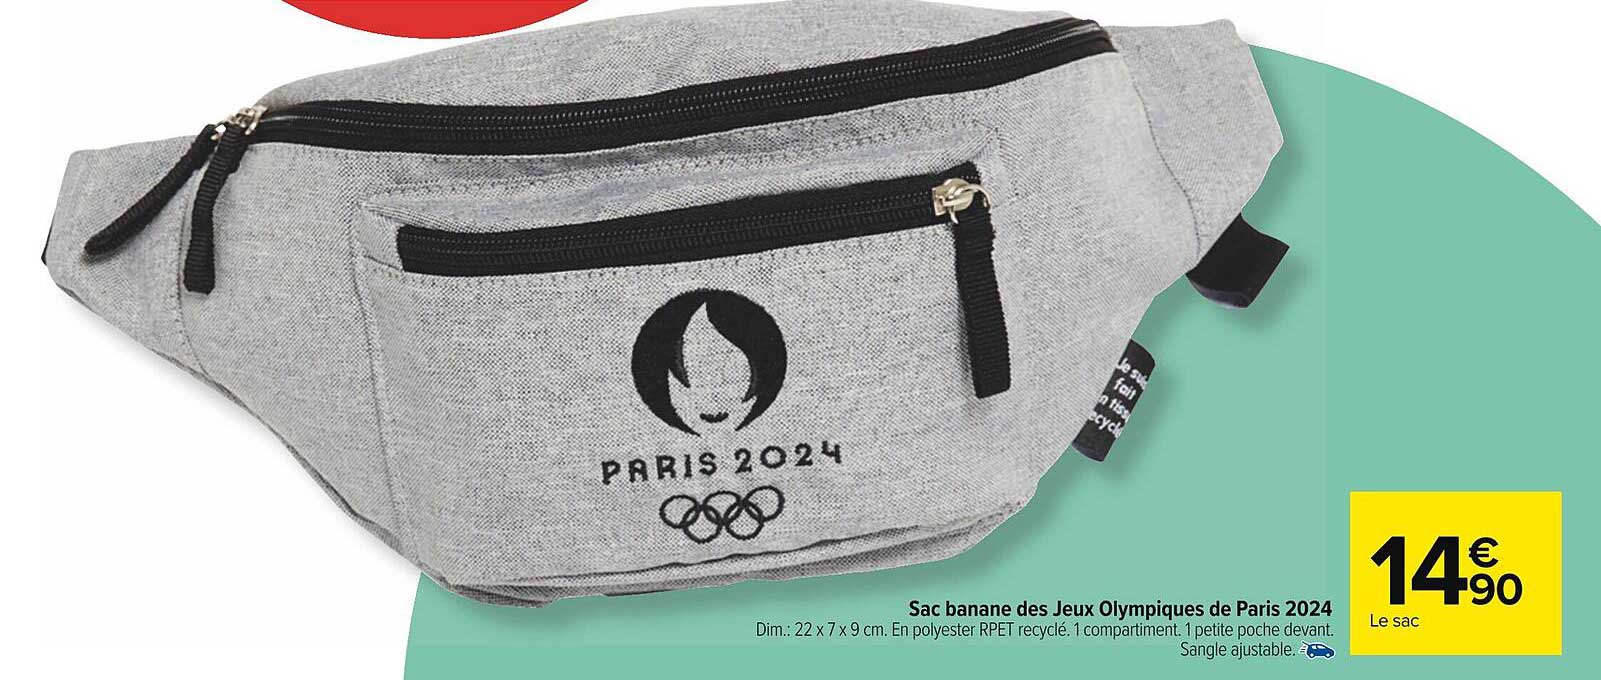 Promo Sac à Dos Des Jeux Olympiques De Paris 2024 chez Carrefour